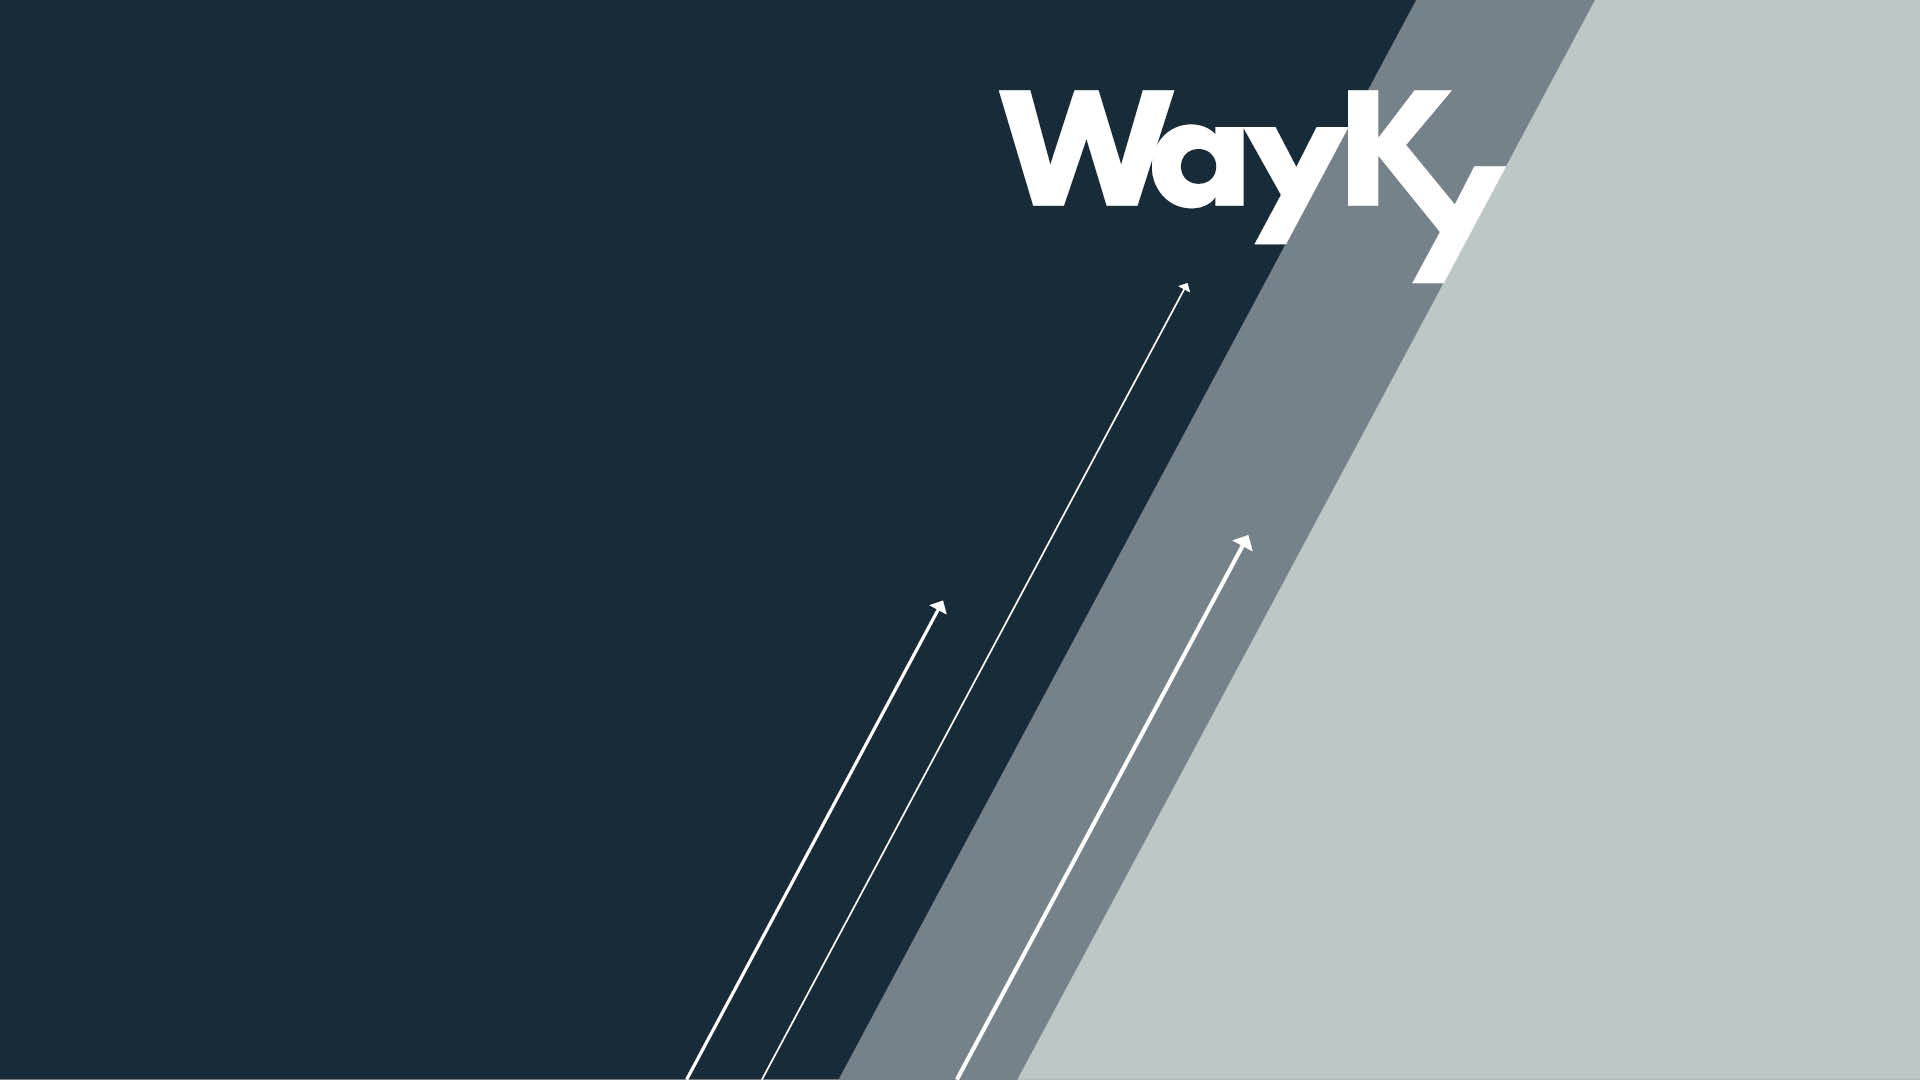 Identità visiva applicata al marchio - Wayky Srl